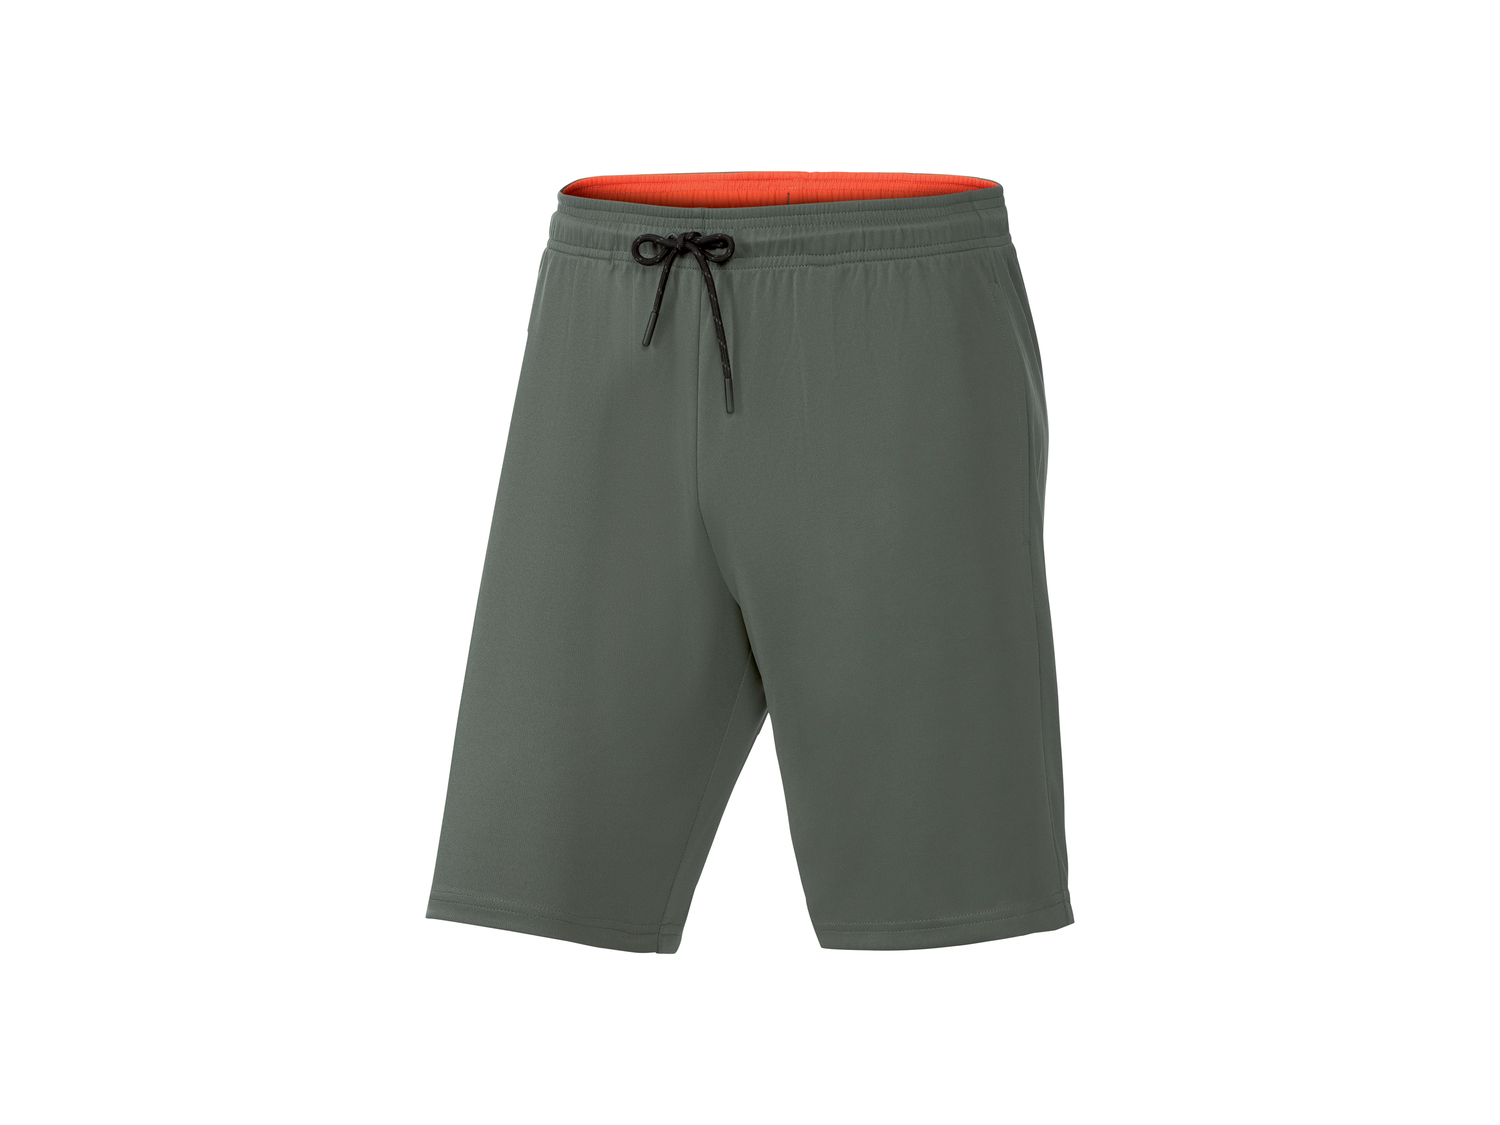 Shorts sportivi da uomo Crivit, prezzo 3.99 &#8364; 
Misure: S-XL
Taglie disponibili

Caratteristiche

- ...